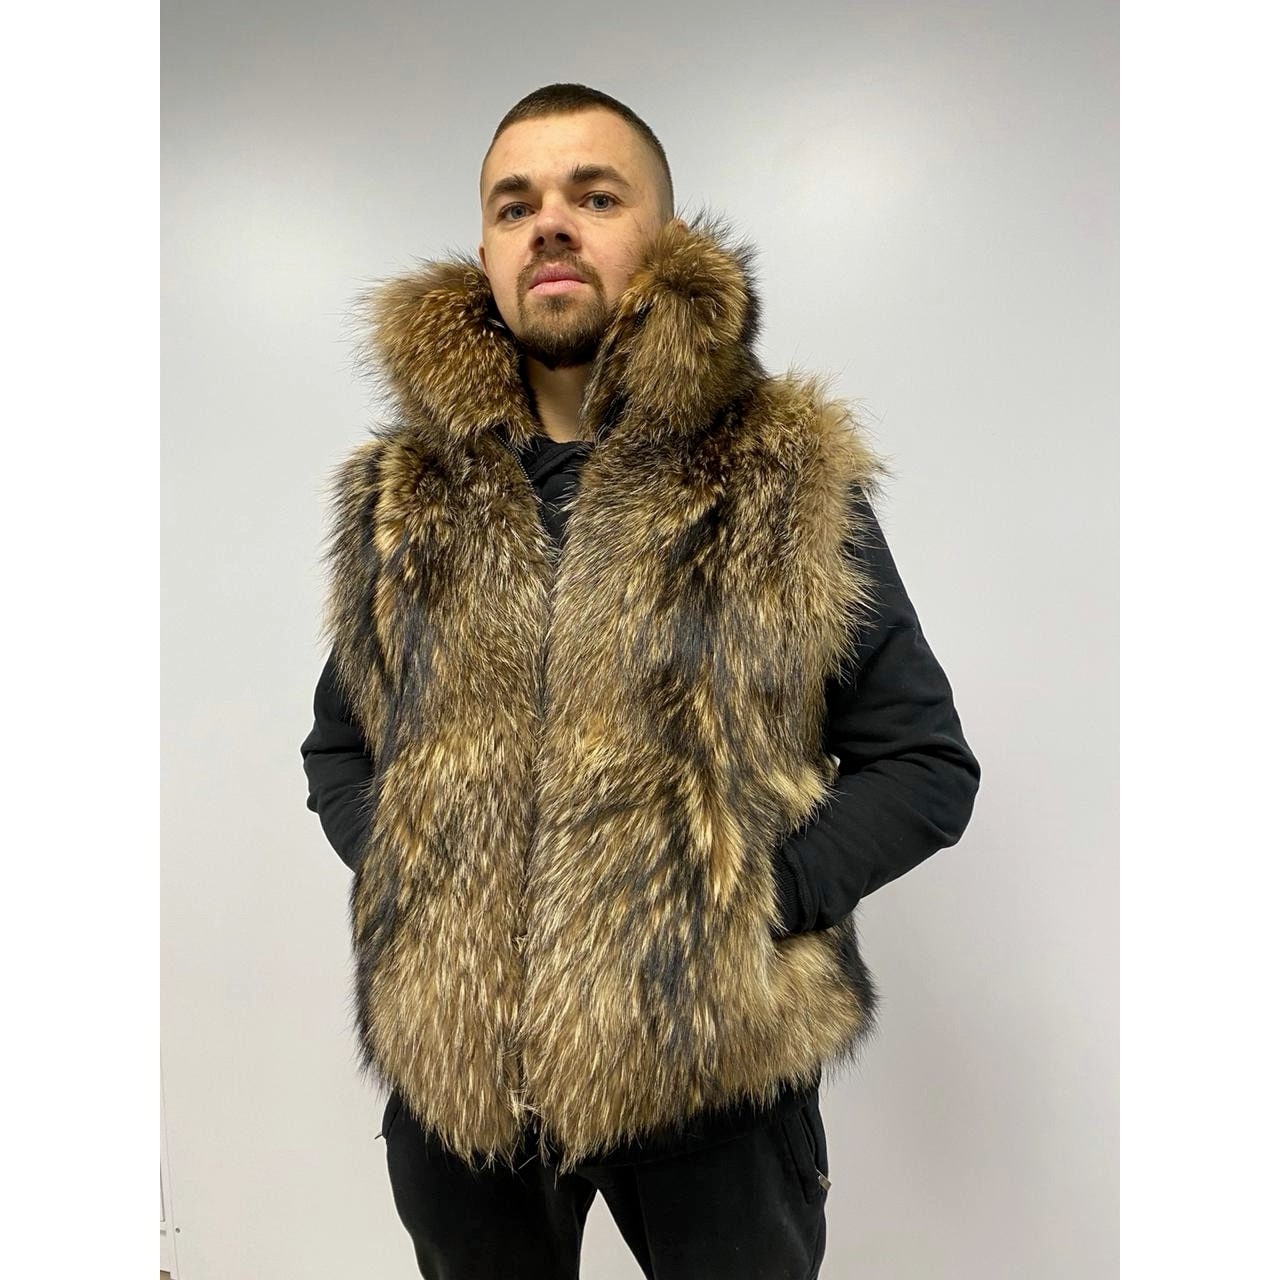 Men Faux Fur Vest Jacket Sleeveless Winter Body Warm Coat Hooded Waistcoat Gilet Parka Cardigan Outerwear Overwear 